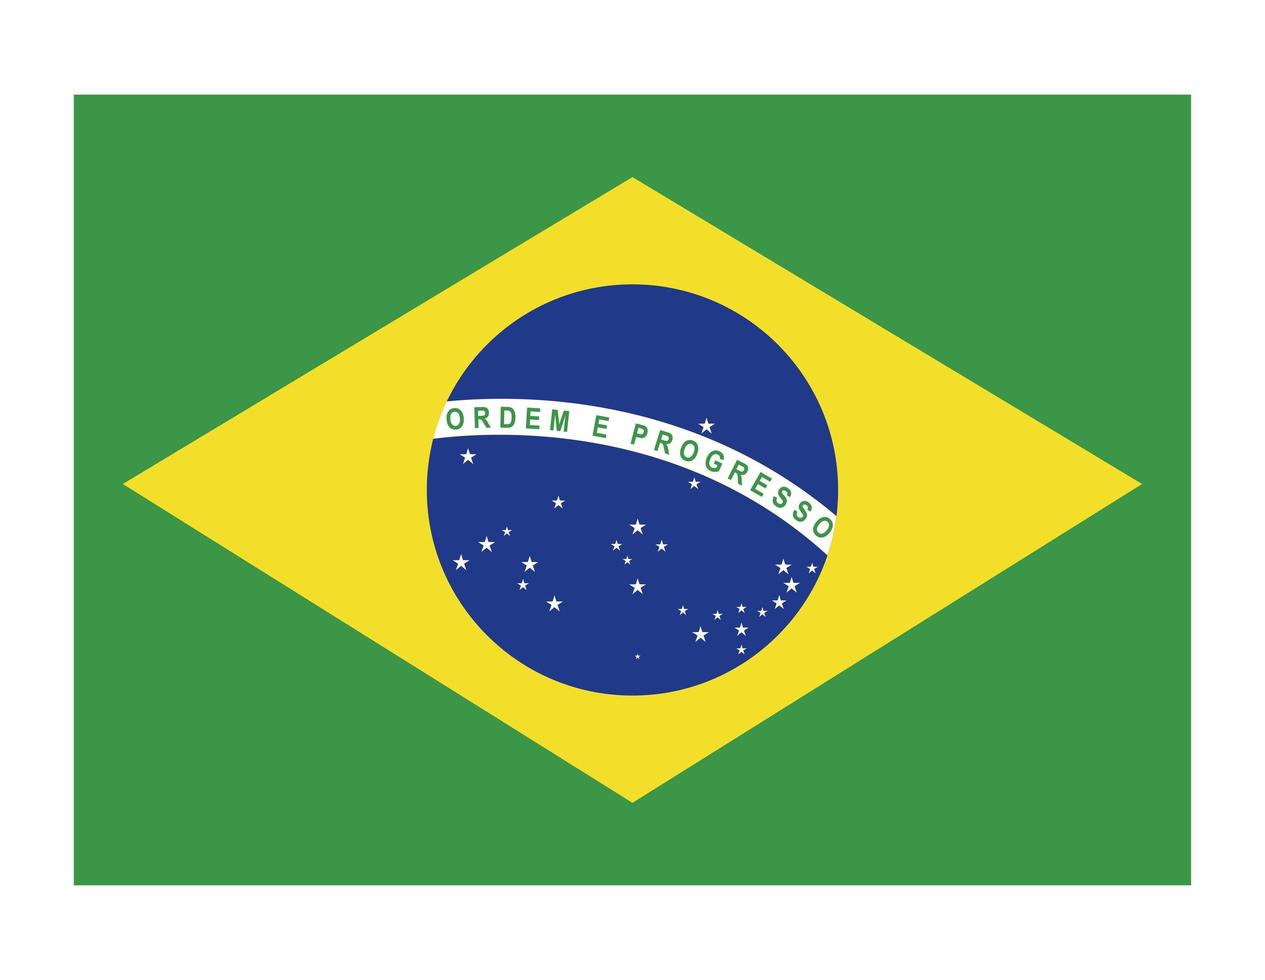 bandiera del brasile vettore